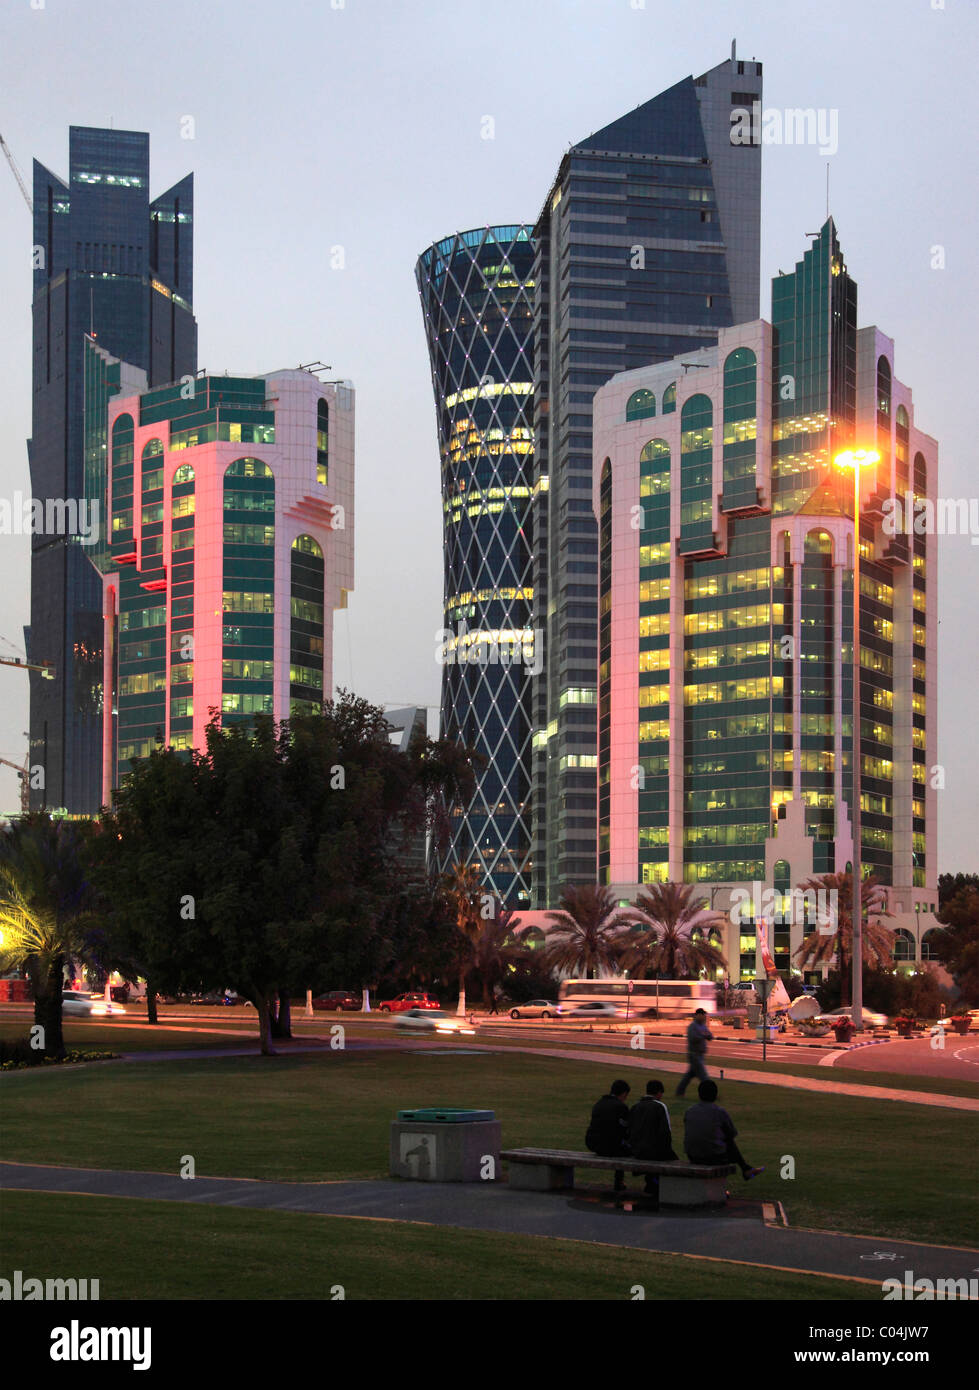 Qatar, Doha, Al Corniche Street, modern architecture, skyscrapers, Stock Photo